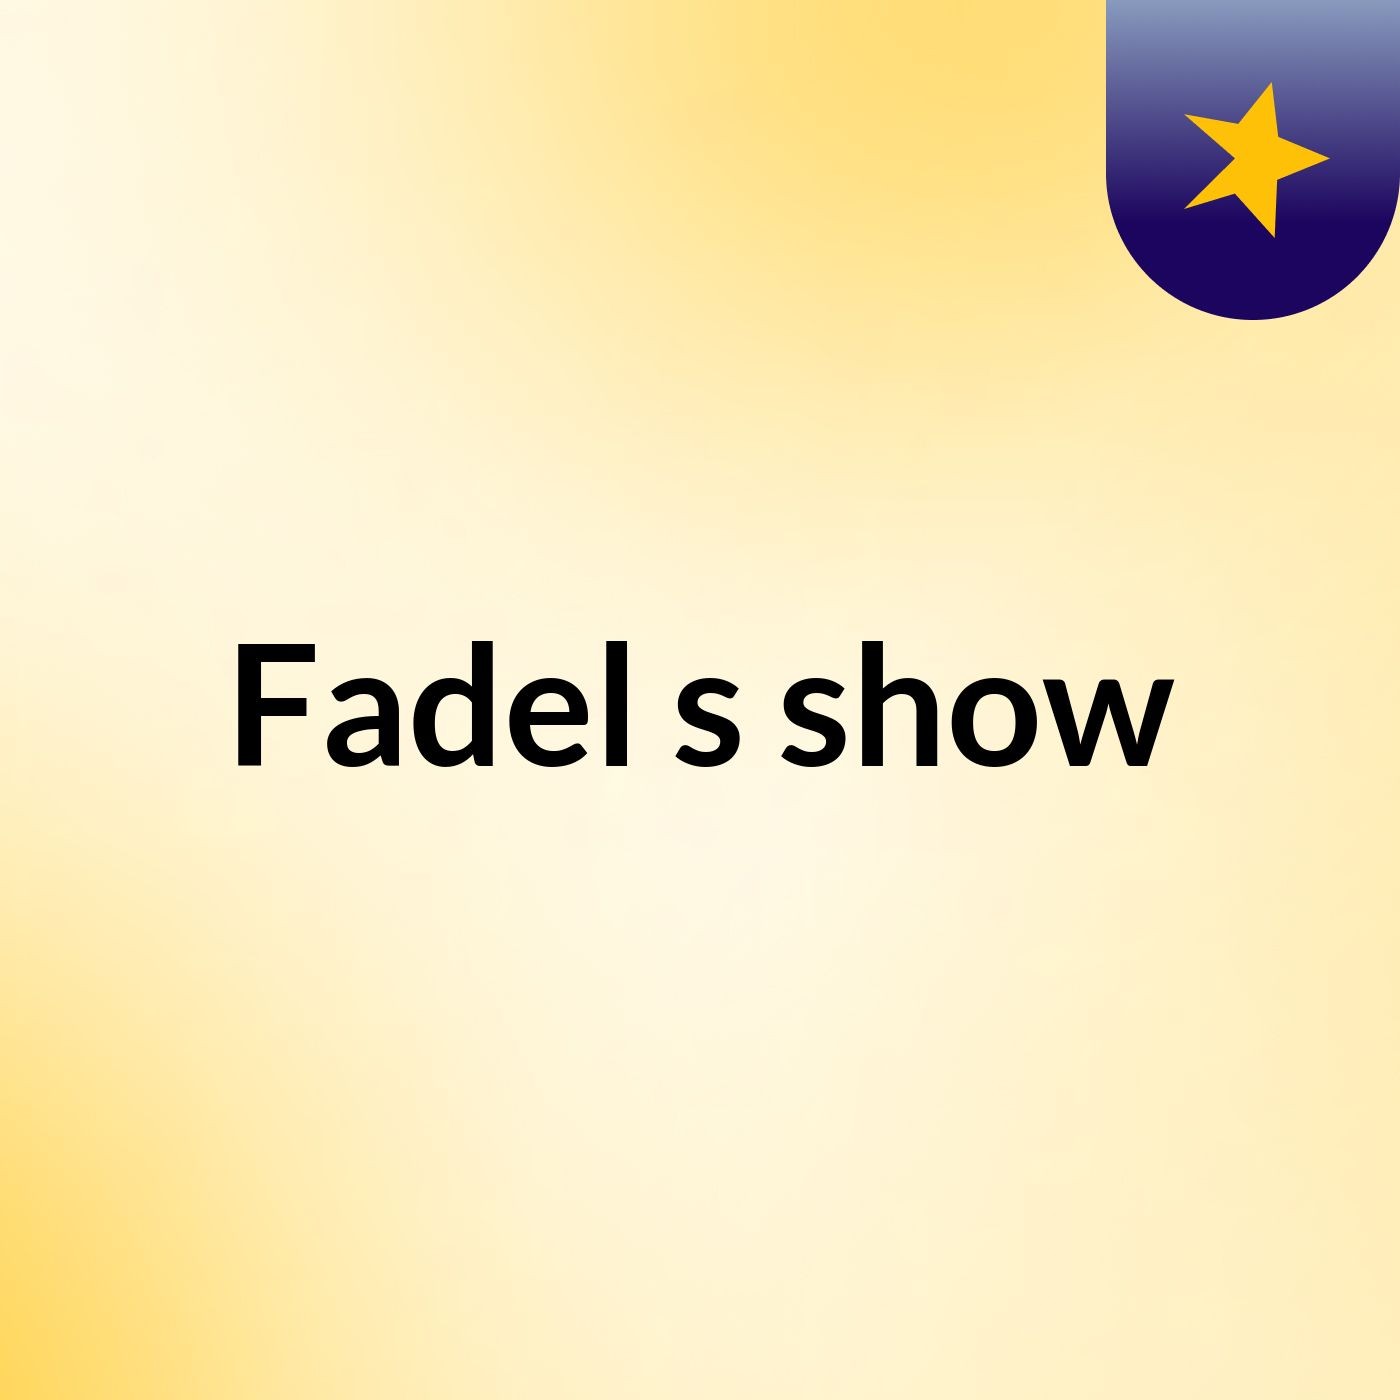 Fadel's show